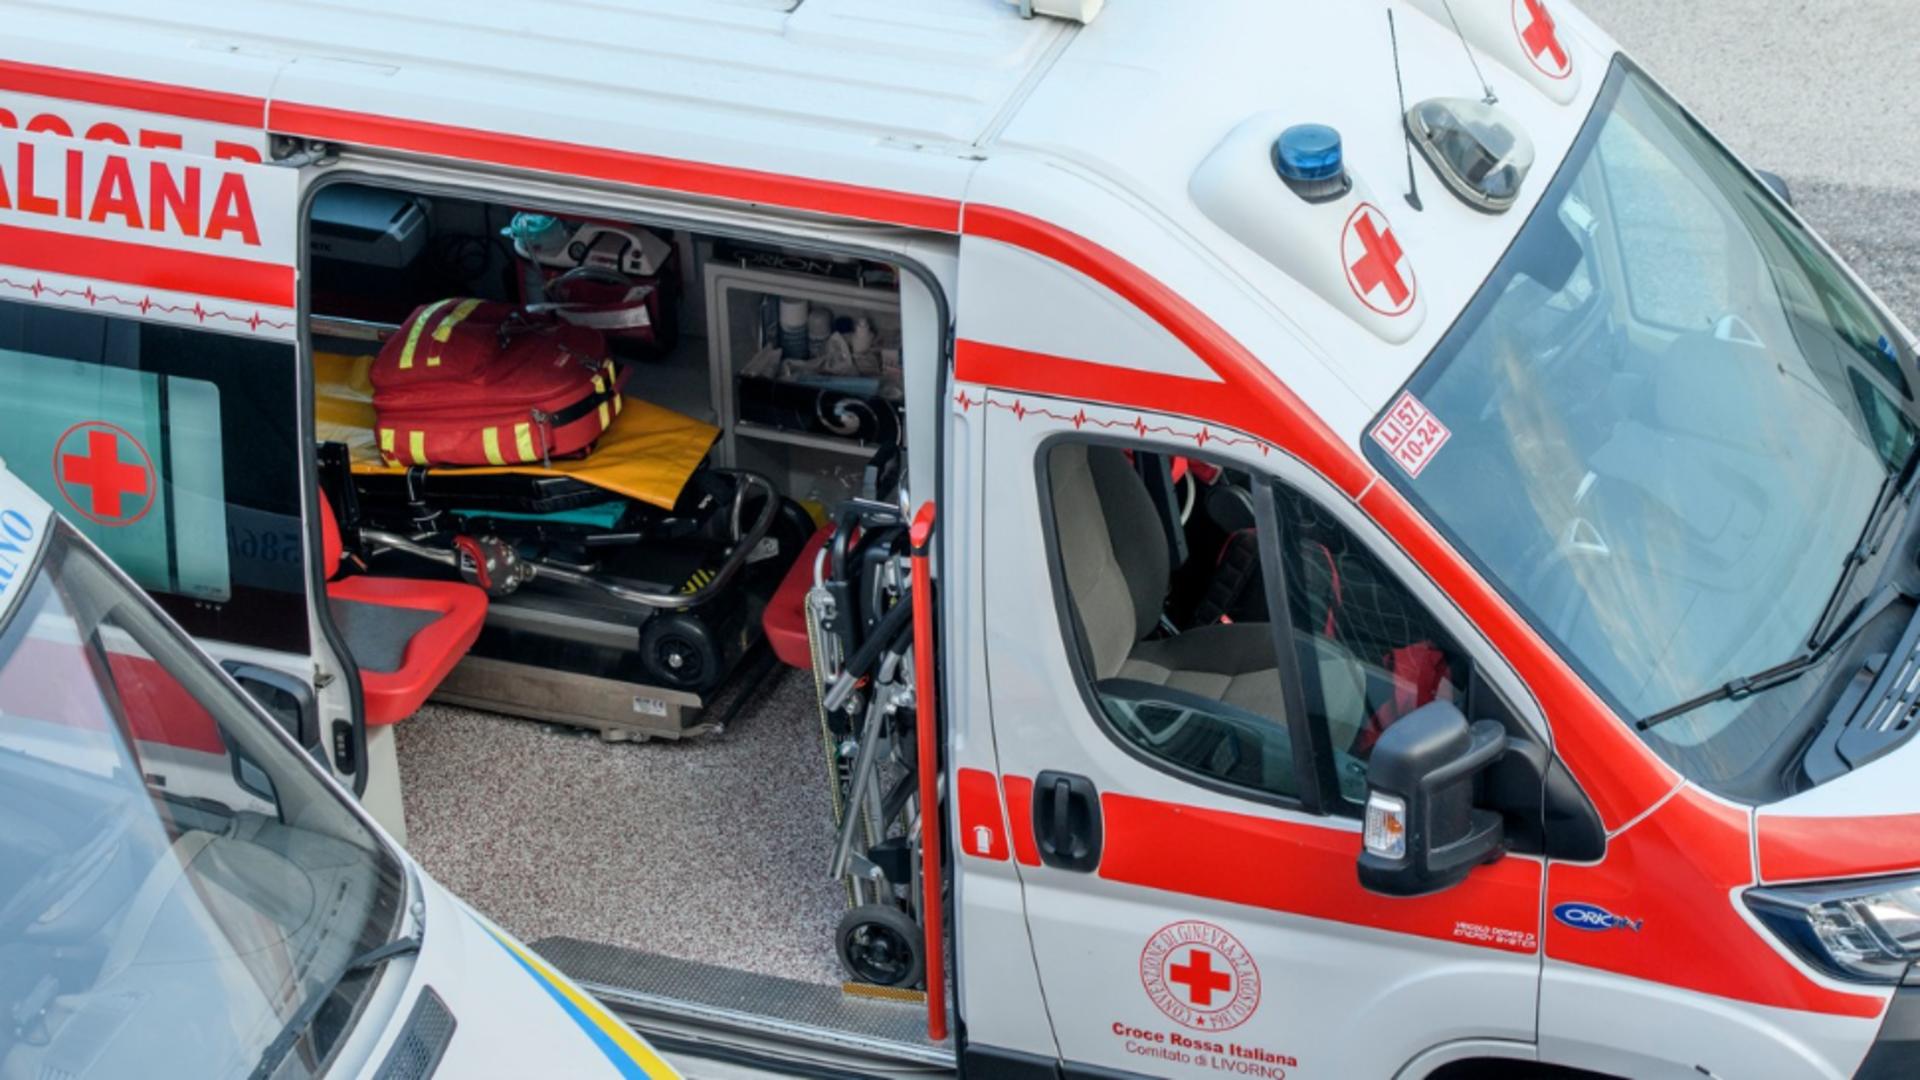 Ambulanță Italia/Profimedia